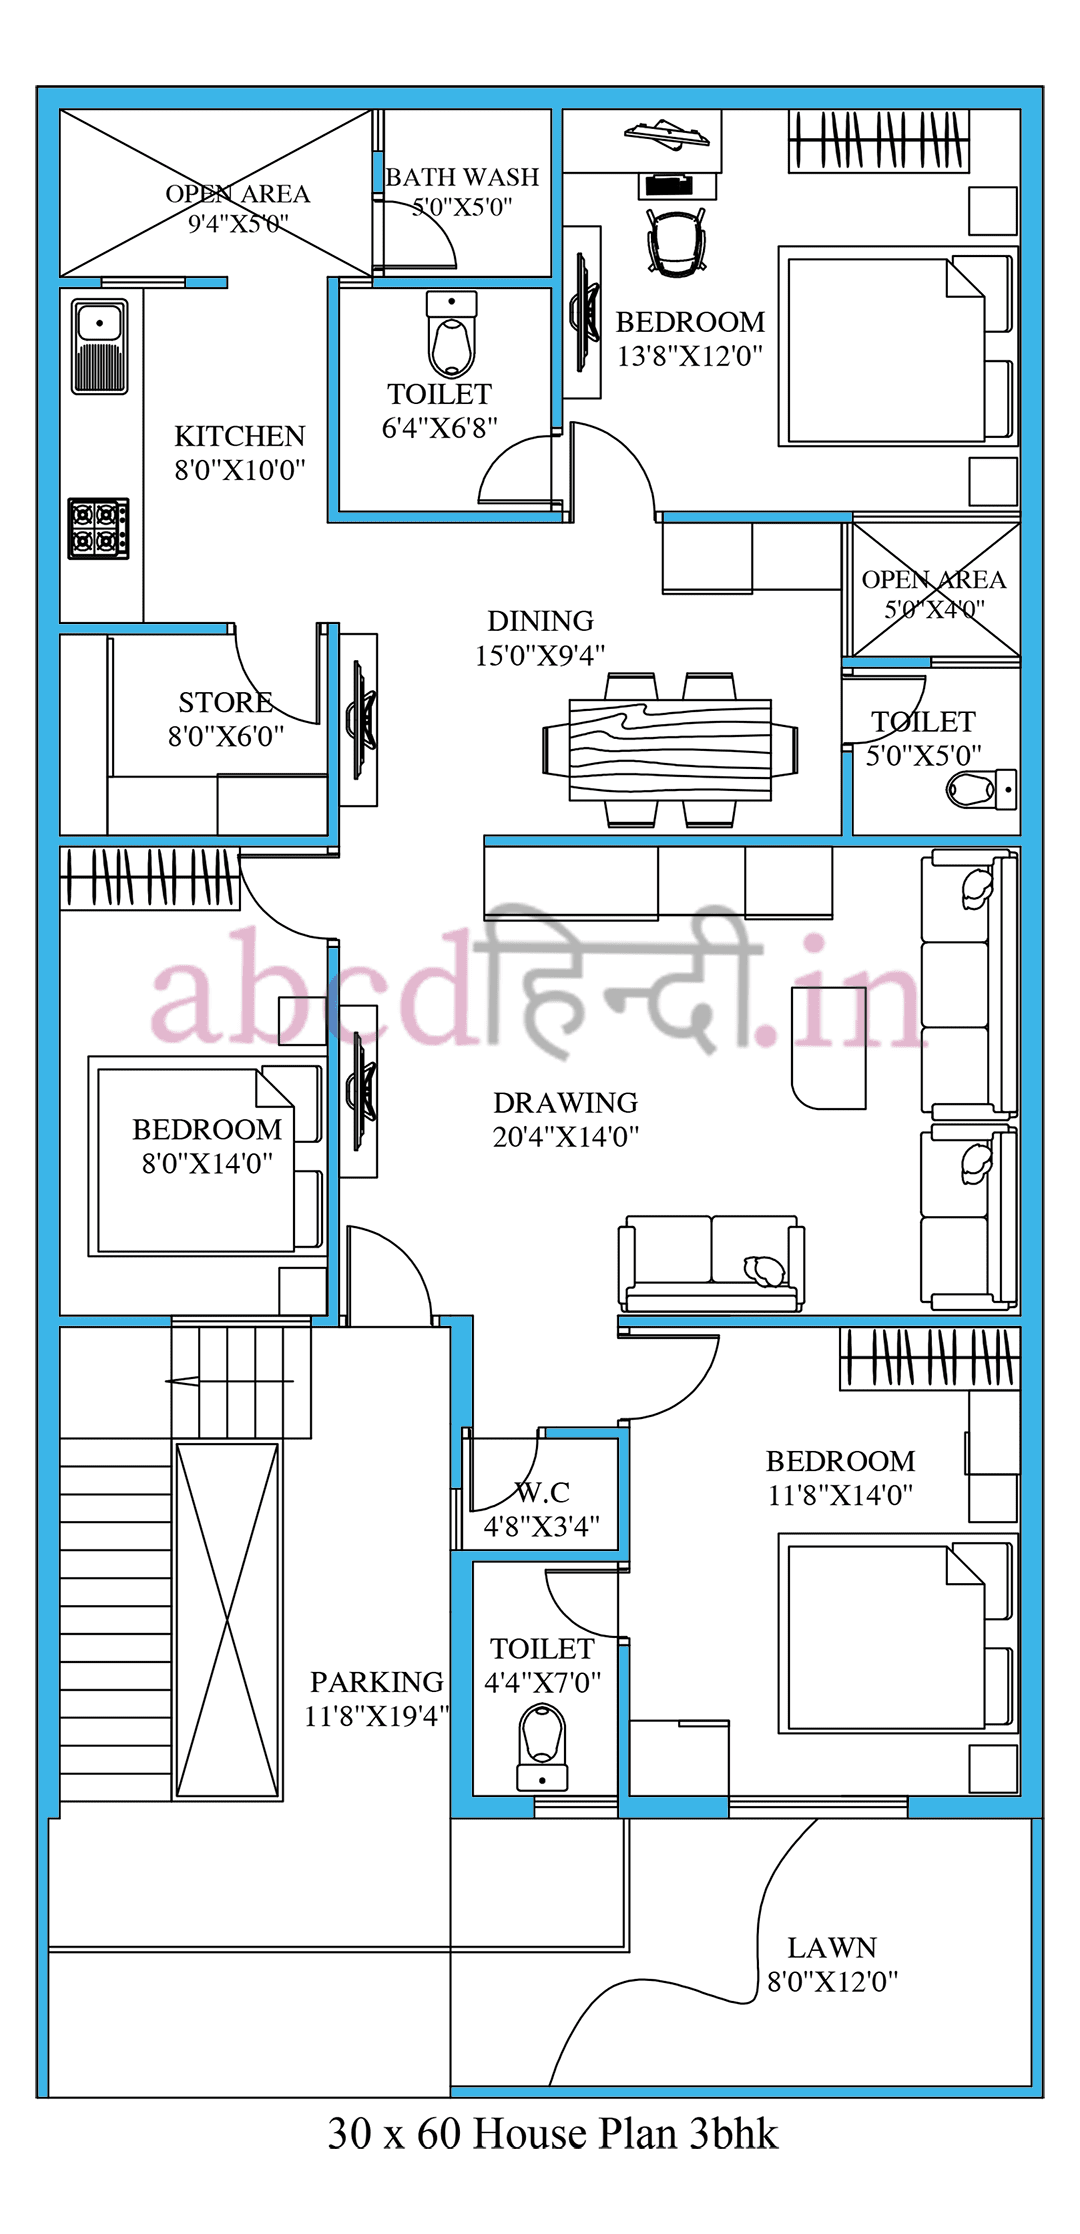 30x60 house plan